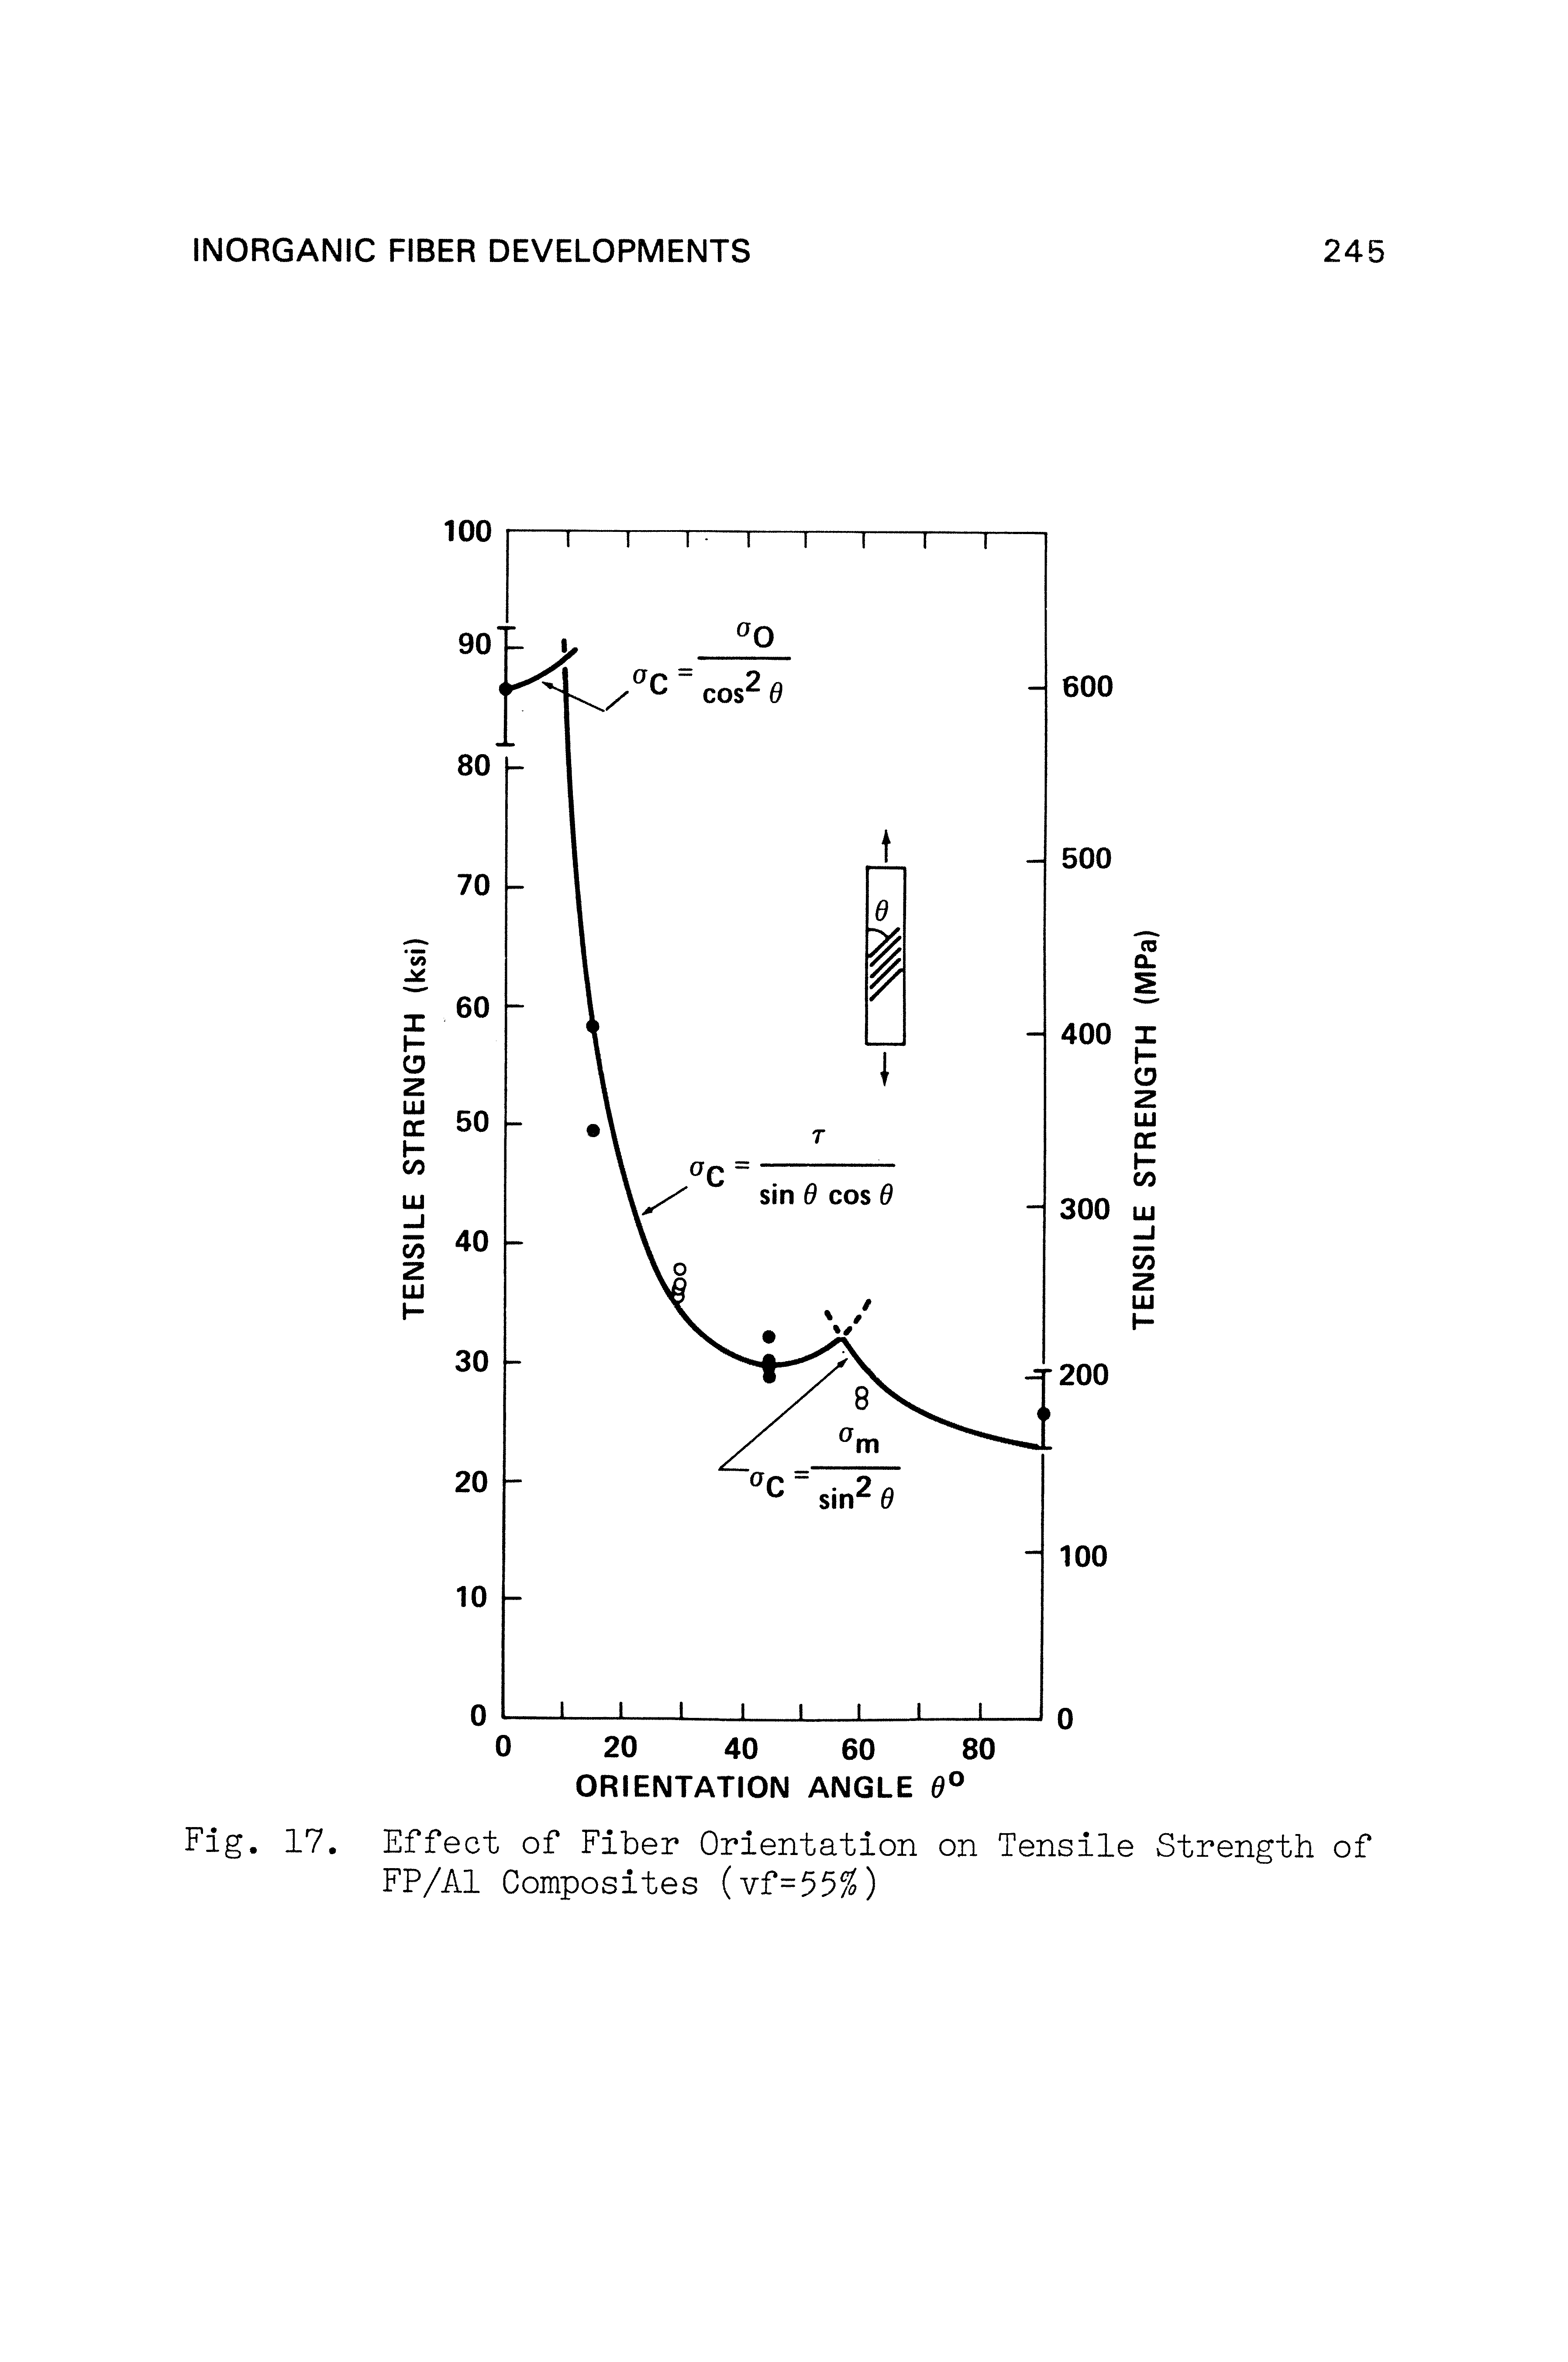 Fig. 17. Effect of Fiber Orientation on Tensile Strength of FP/Al Composites (Yf=55%)...